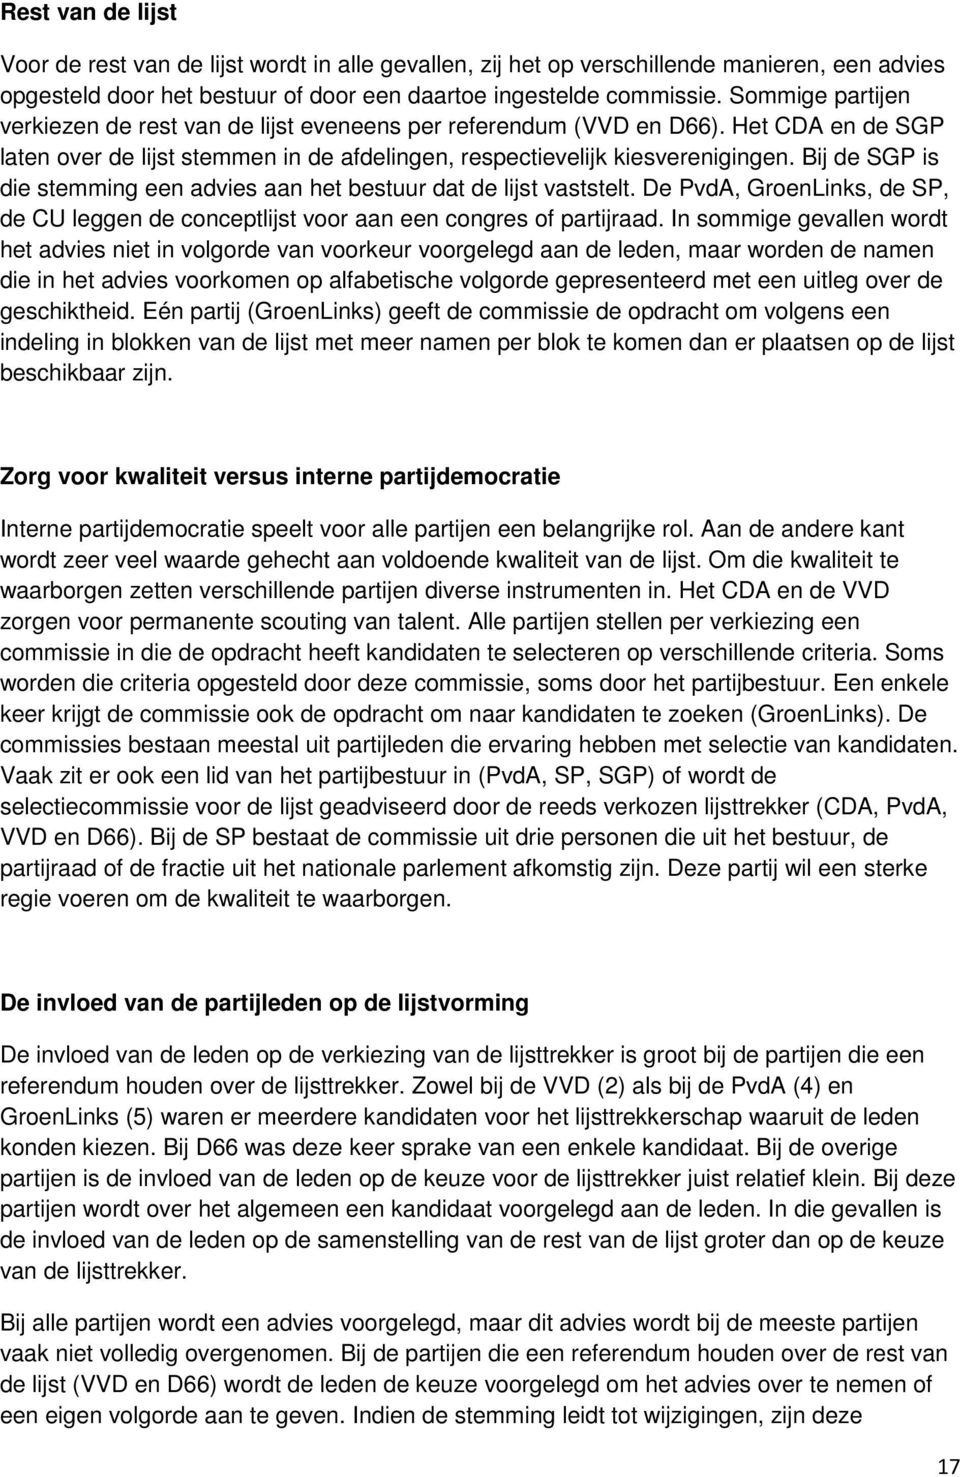 Bij de SGP is die stemming een advies aan het bestuur dat de lijst vaststelt. De PvdA, GroenLinks, de SP, de CU leggen de conceptlijst voor aan een congres of partijraad.